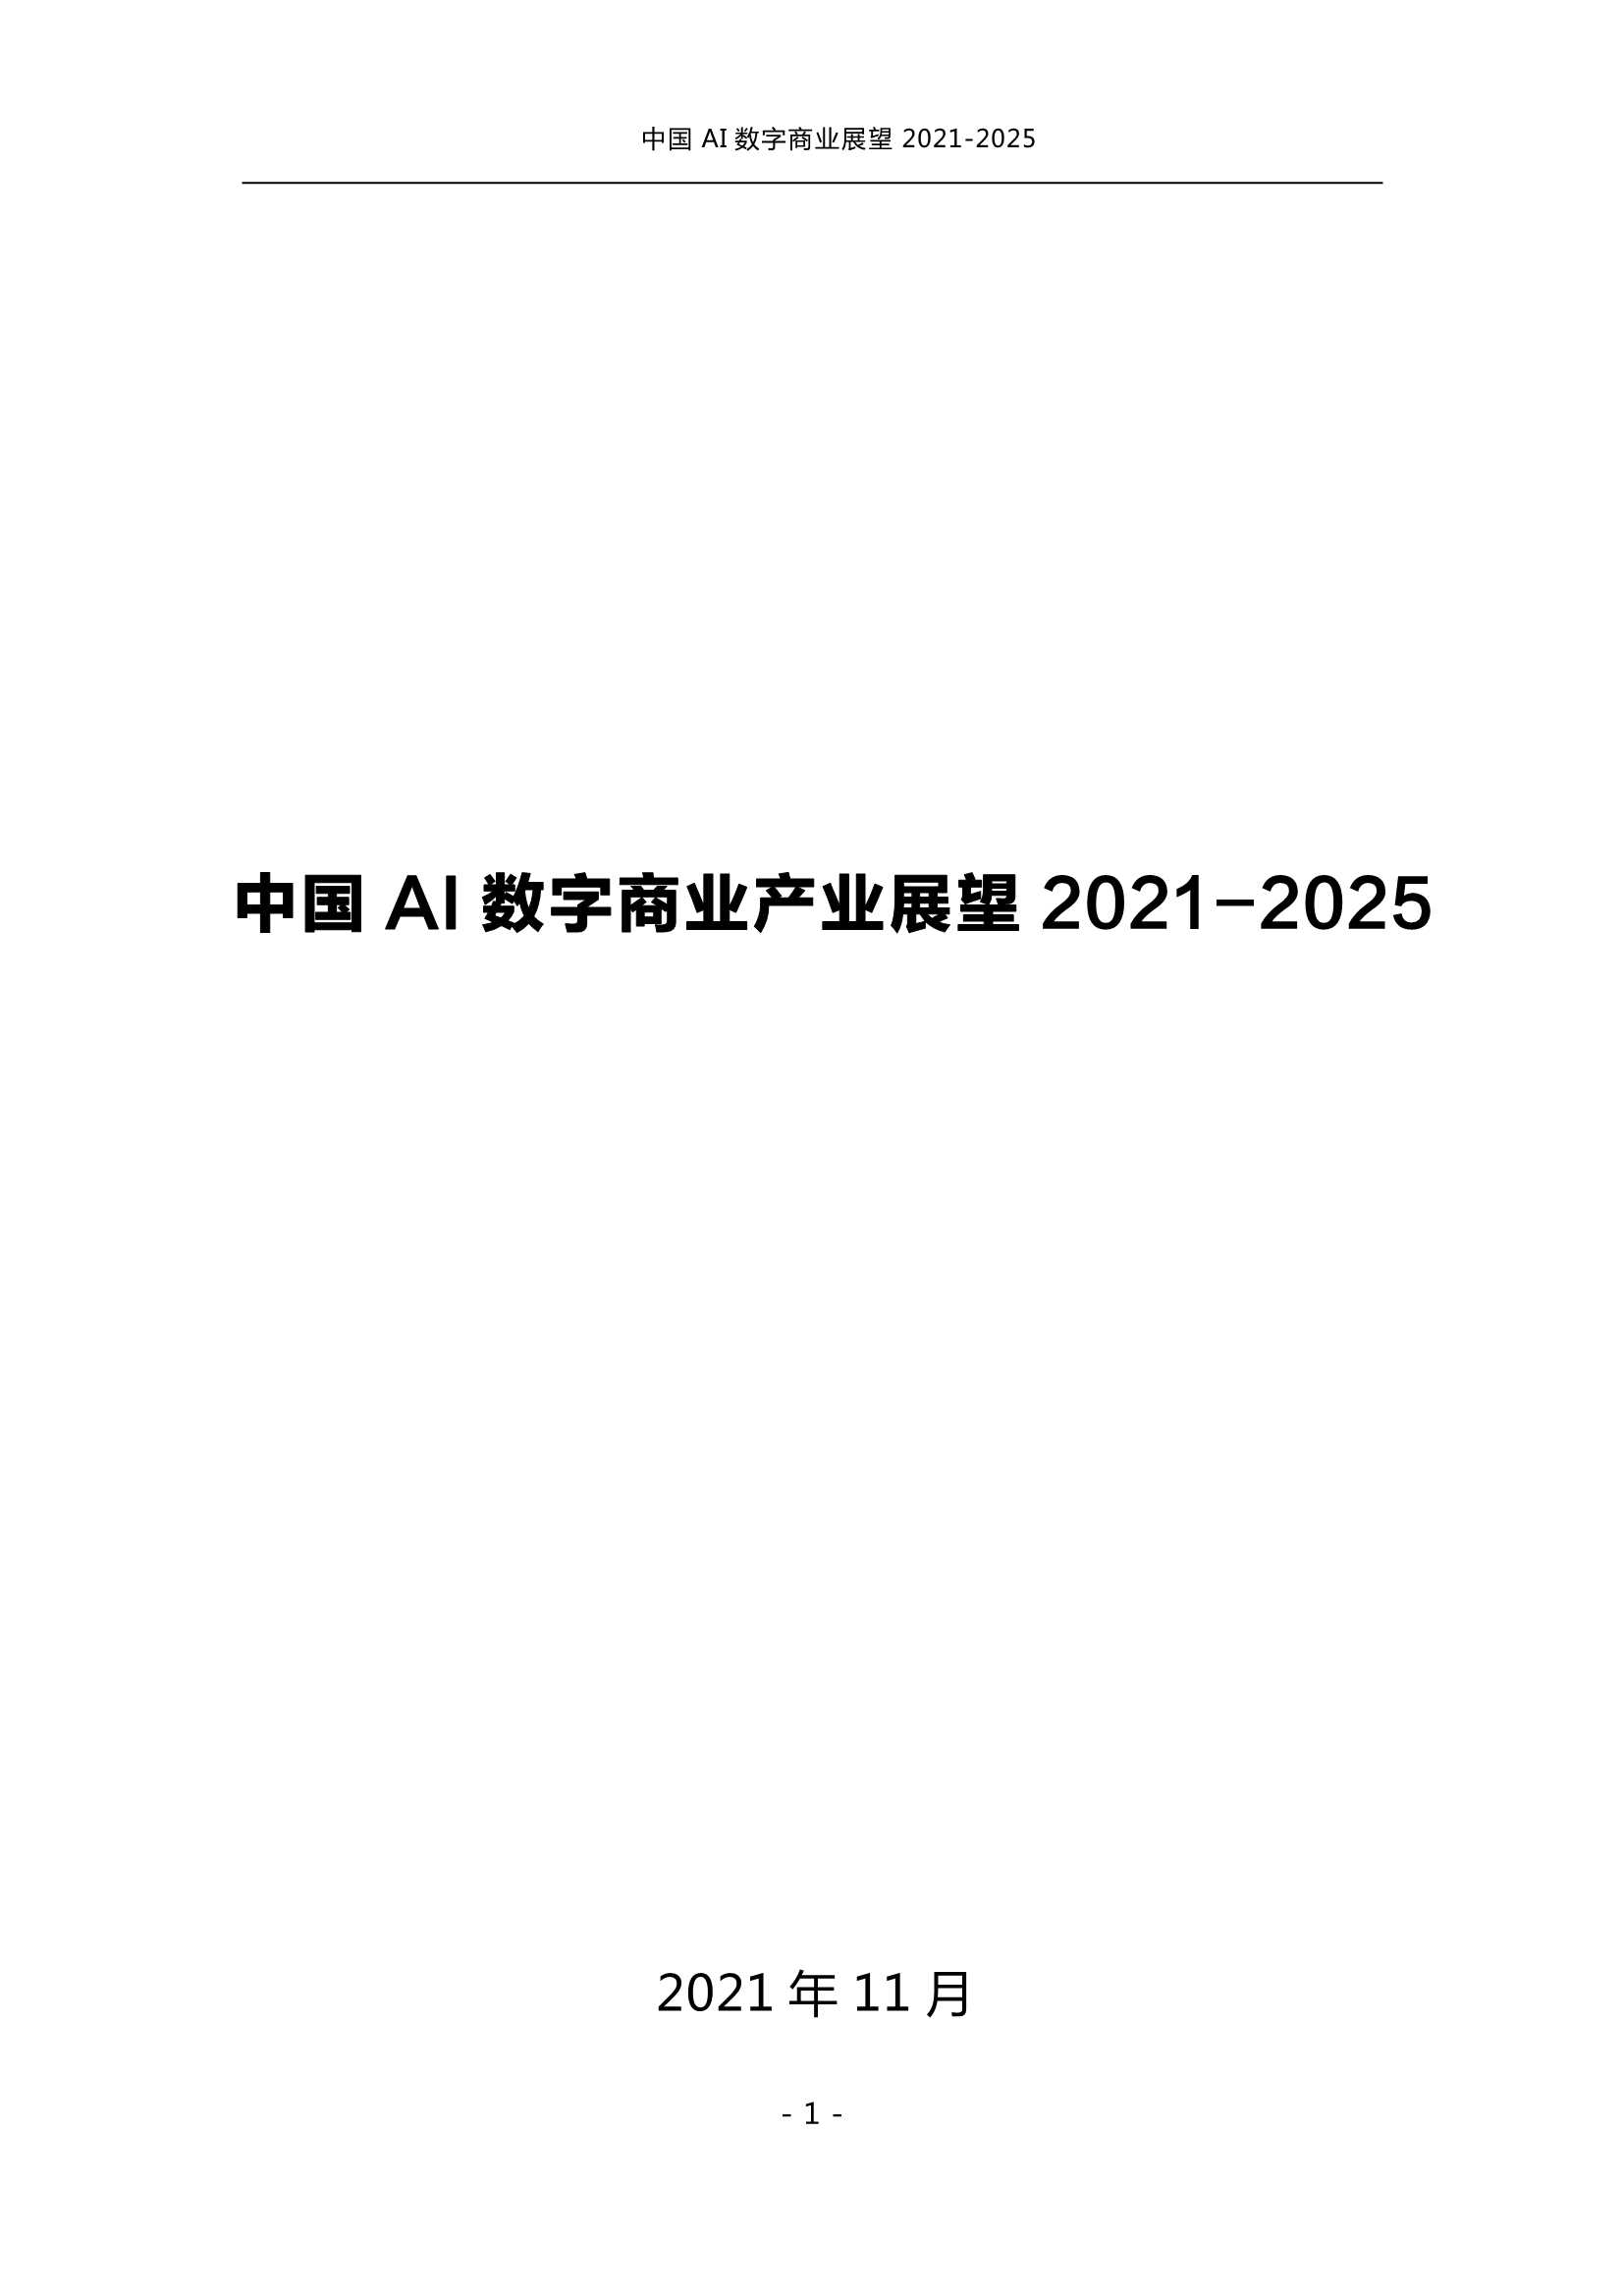 前瞻-中国AI数字商业产业展望2021-2025-2021.12-108页